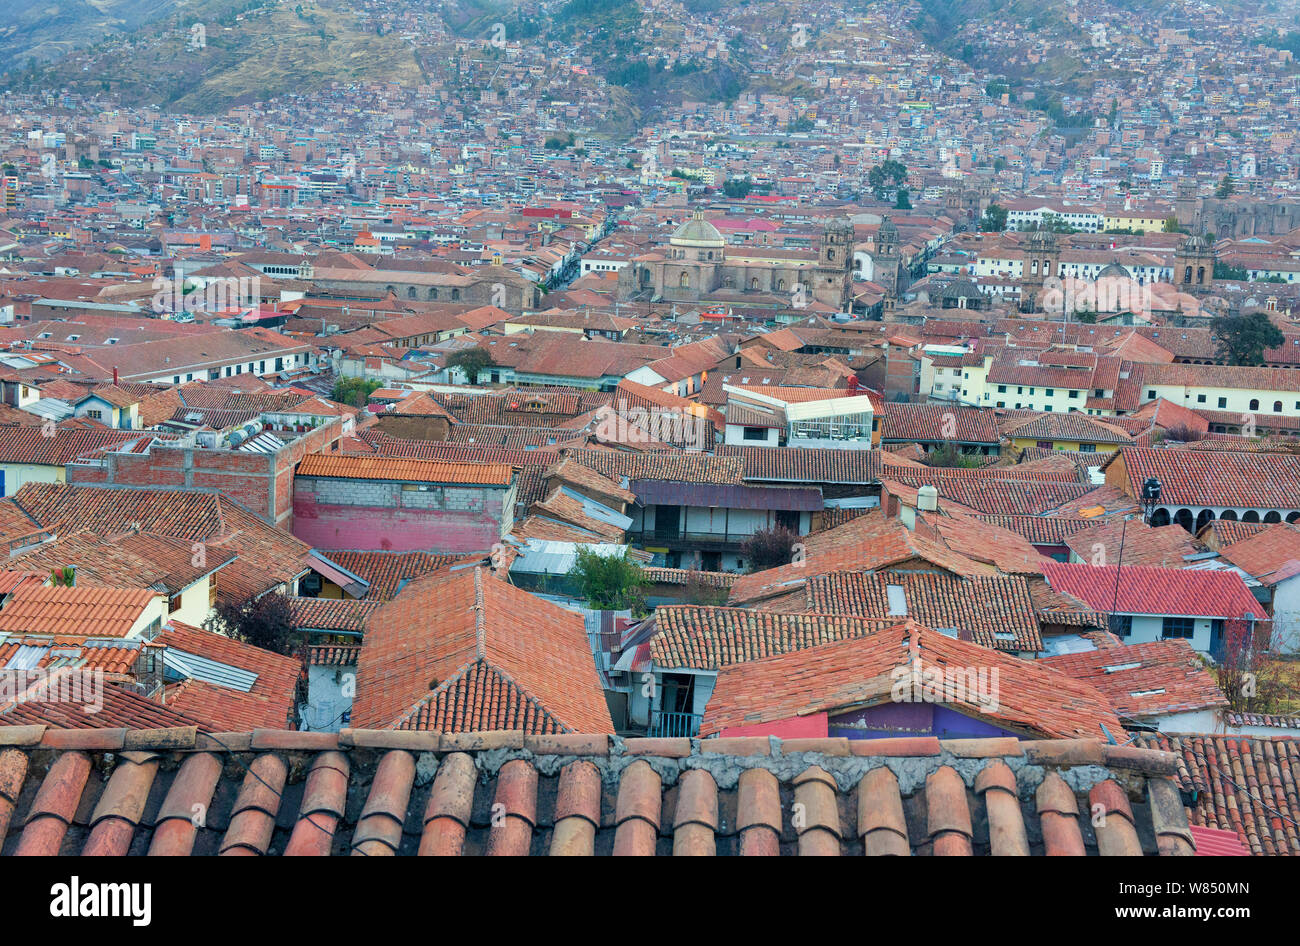 Los techos de tejas rojas y la arquitectura colonial de la ciudad Patrimonio de la Humanidad de la UNESCO de Cusco, Peru. Foto de stock